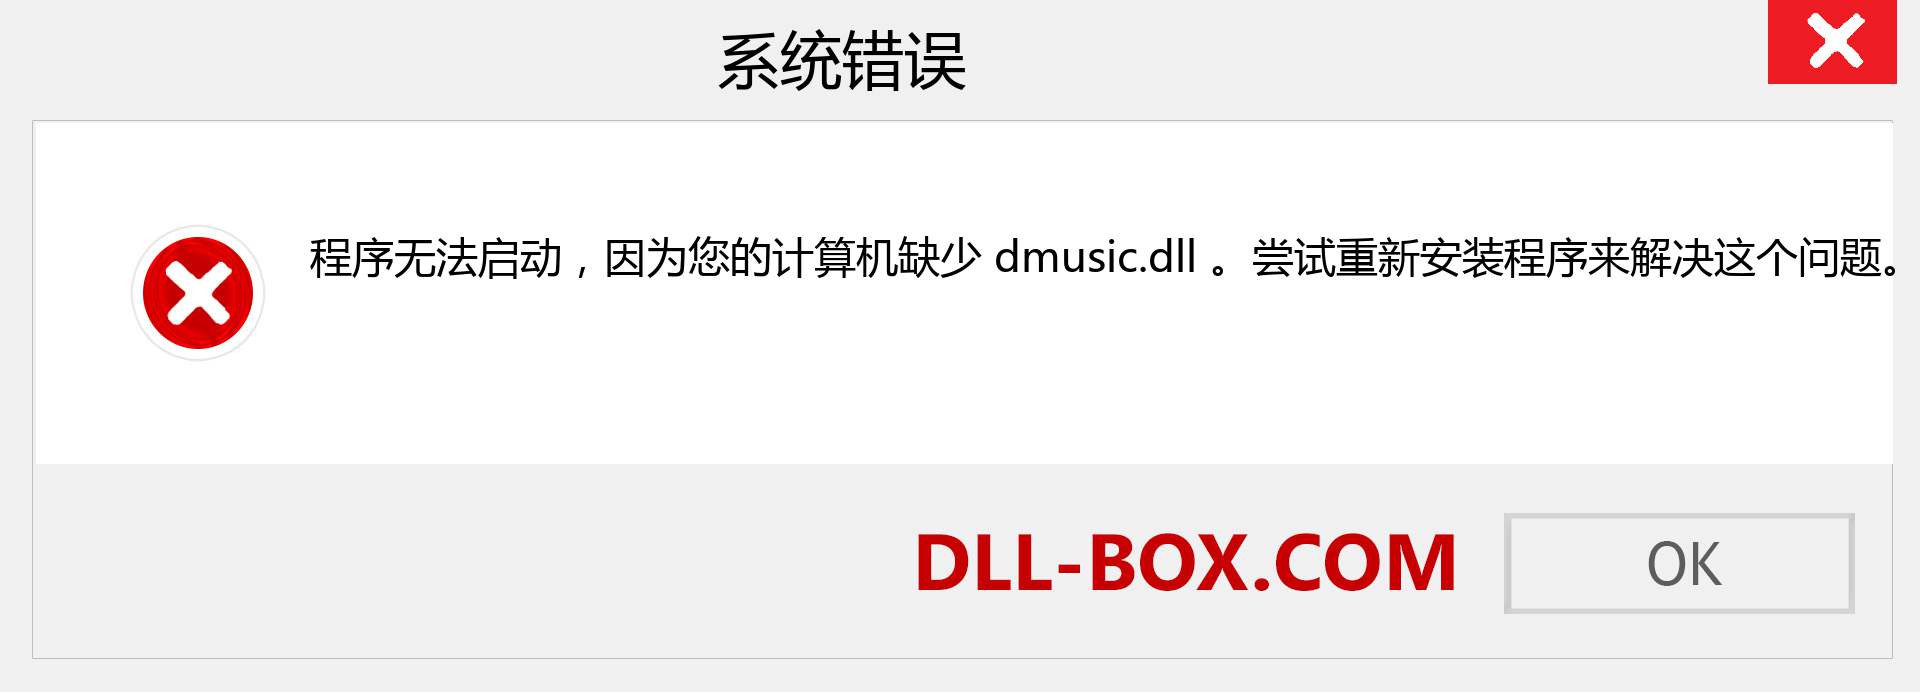 dmusic.dll 文件丢失？。 适用于 Windows 7、8、10 的下载 - 修复 Windows、照片、图像上的 dmusic dll 丢失错误